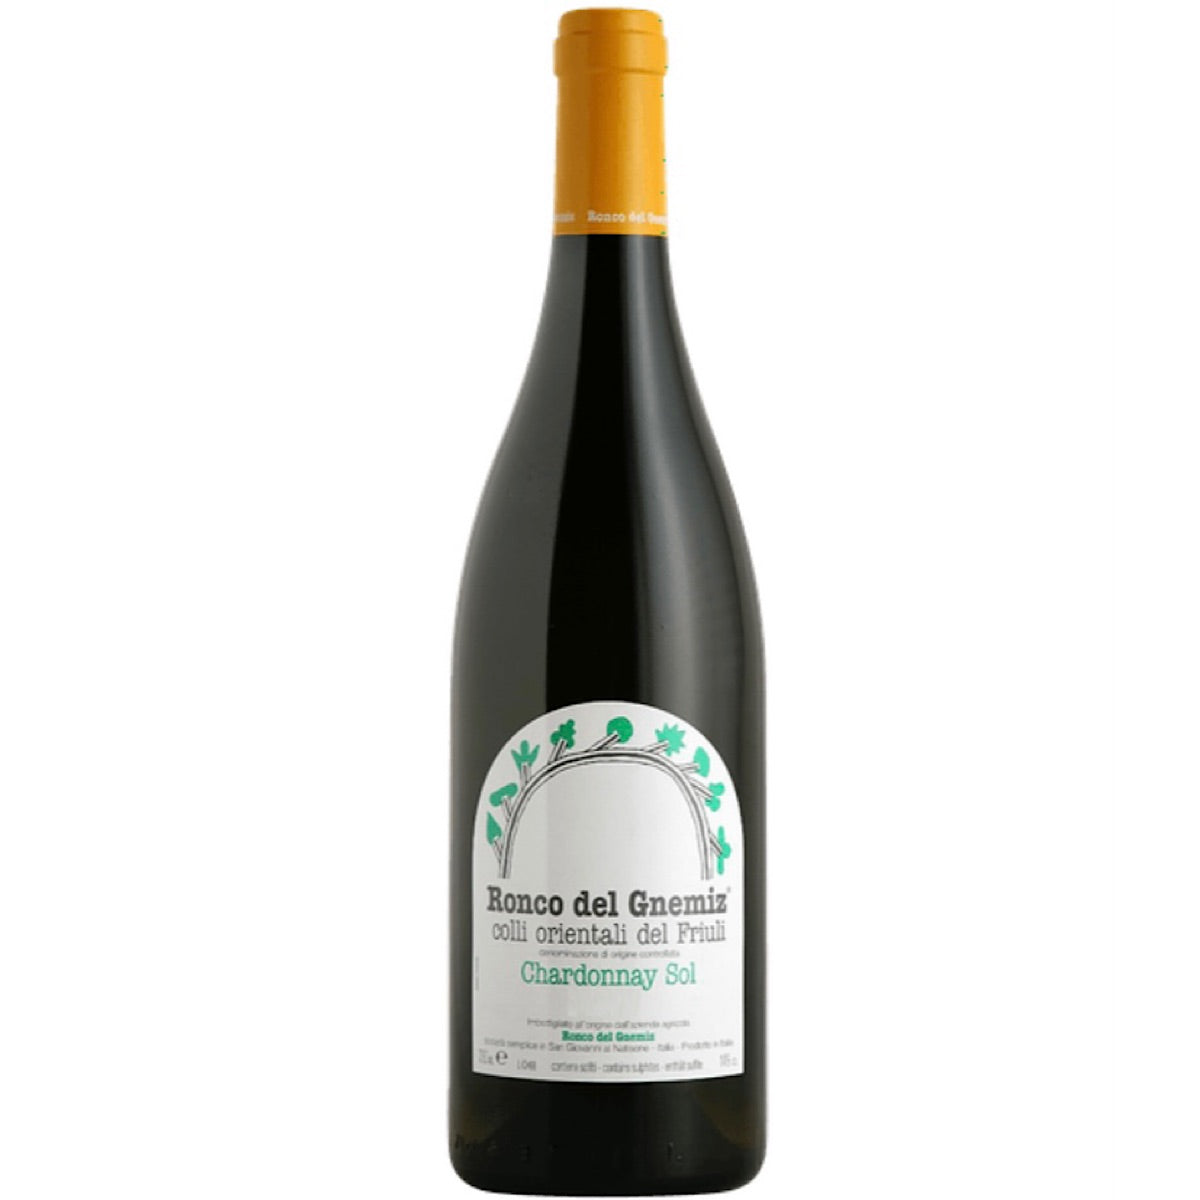 Ronco del Gnemiz, Chardonnay Sol - Organic, 6 Bottle Case 75cl